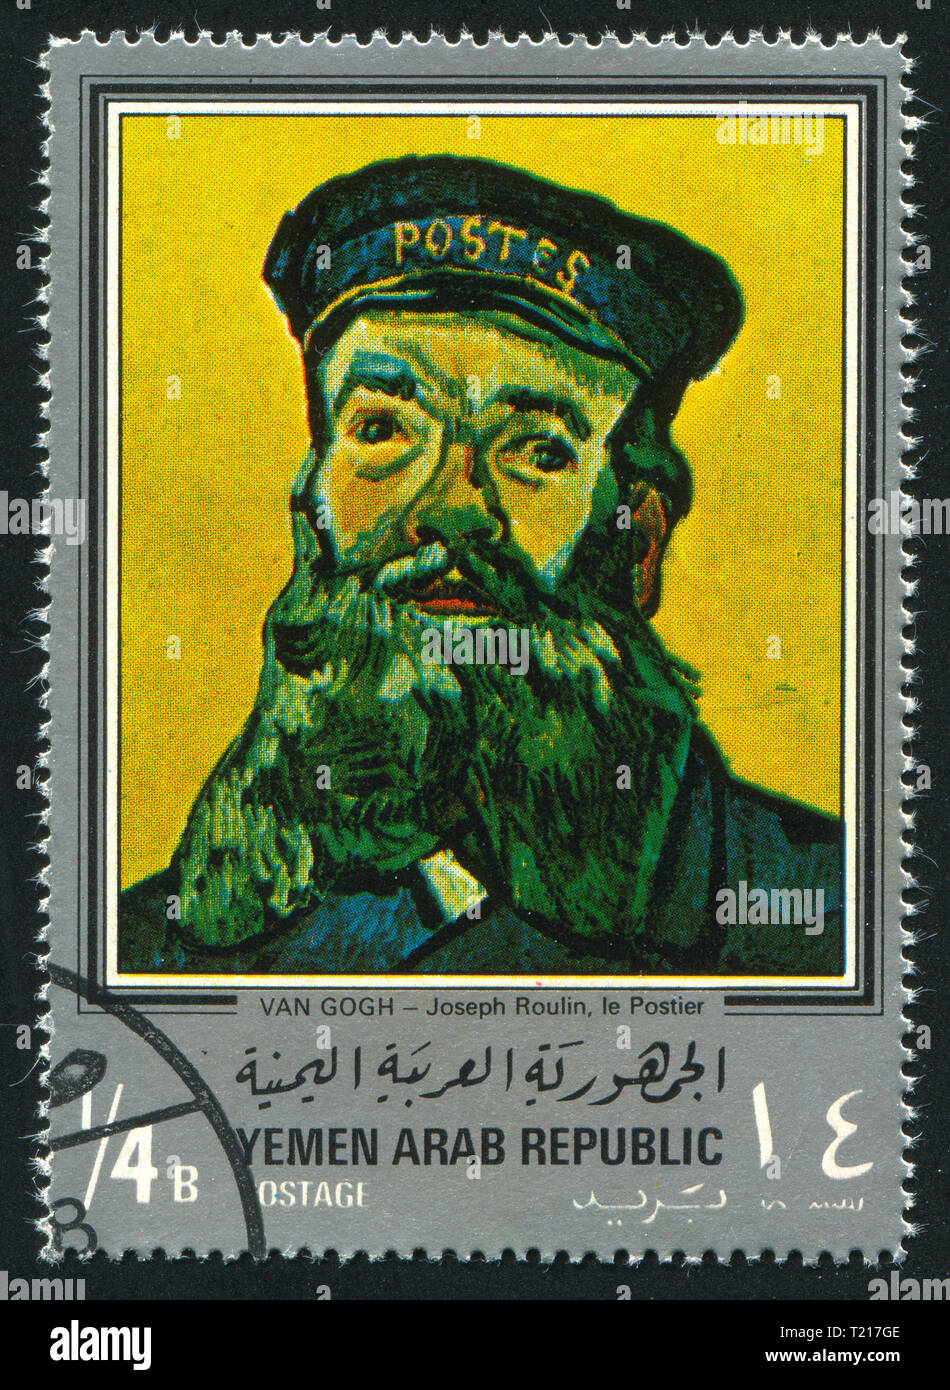 YEMEN - circa 1972: sello impreso por el Yemen, muestra el retrato del cartero Joseph Roulin por Van Gogh, circa 1972 Foto de stock